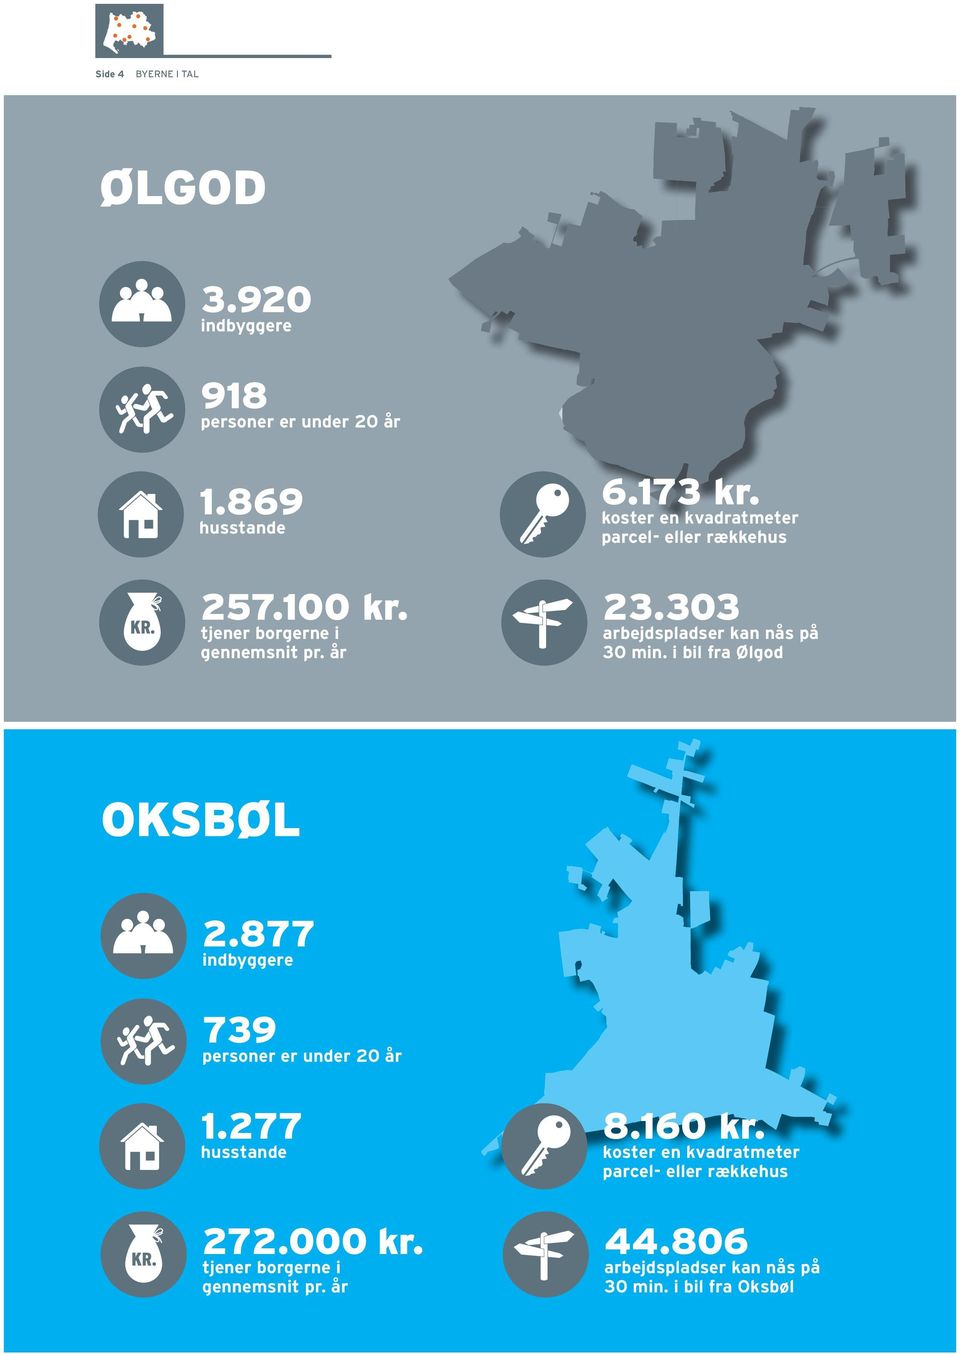 303 arbejdspladser kan nås på 30 min. i bil fra Ølgod Oksbøl 2.877 indbyggere 739 personer er under 20 år 1.